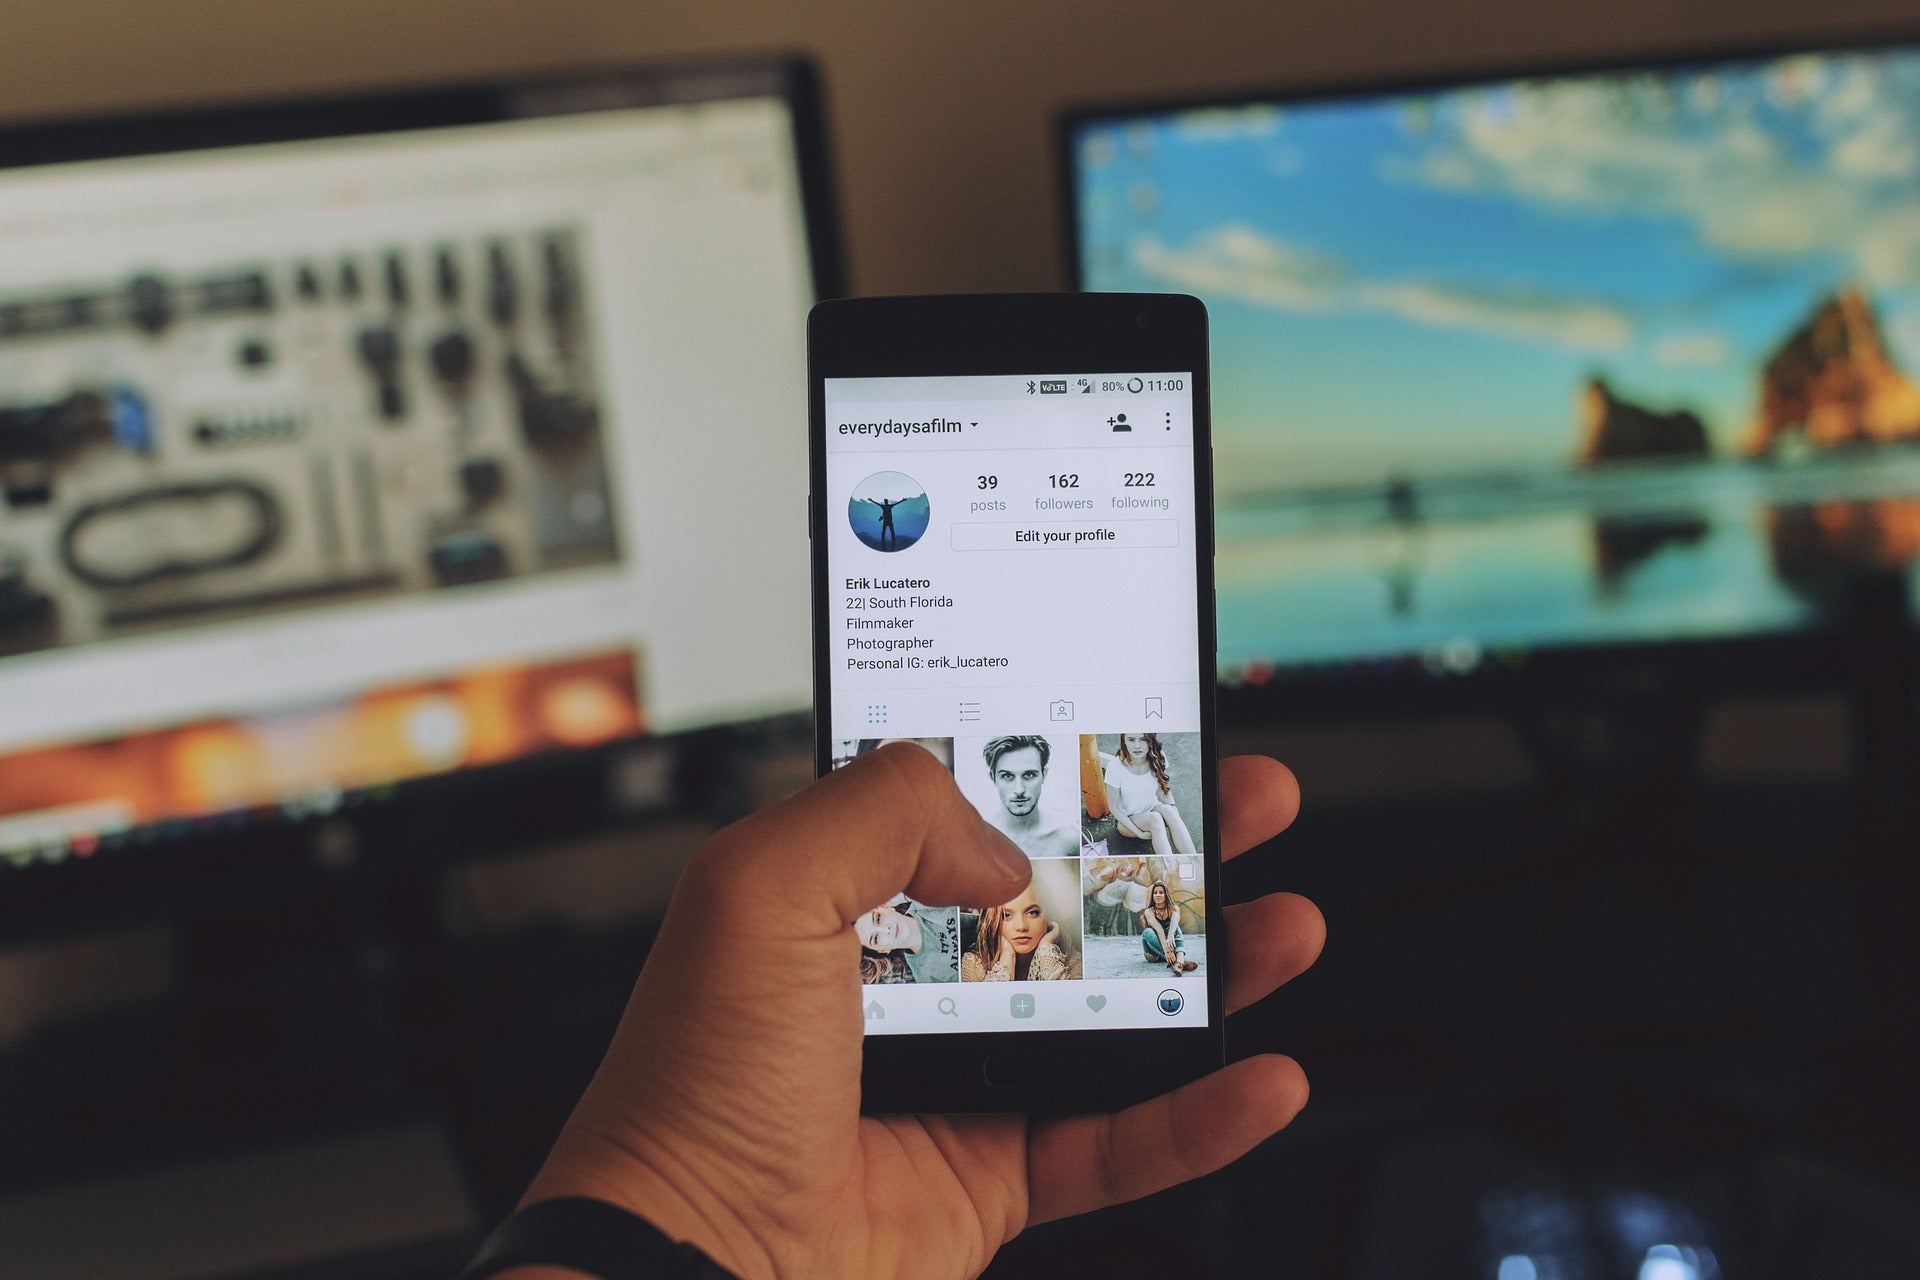 Blick auf ein Handy in der Hand einer Person. Auf dem Bildschirm ist ein Instagram-Profil zu sehen. Im Hintergrund stehen zwei Bildschirme. Danke an Kund:innen kannst du auch sagen, indem du nutzergenerierte Beiträge auf deinen Social-Media-Profilen postest.